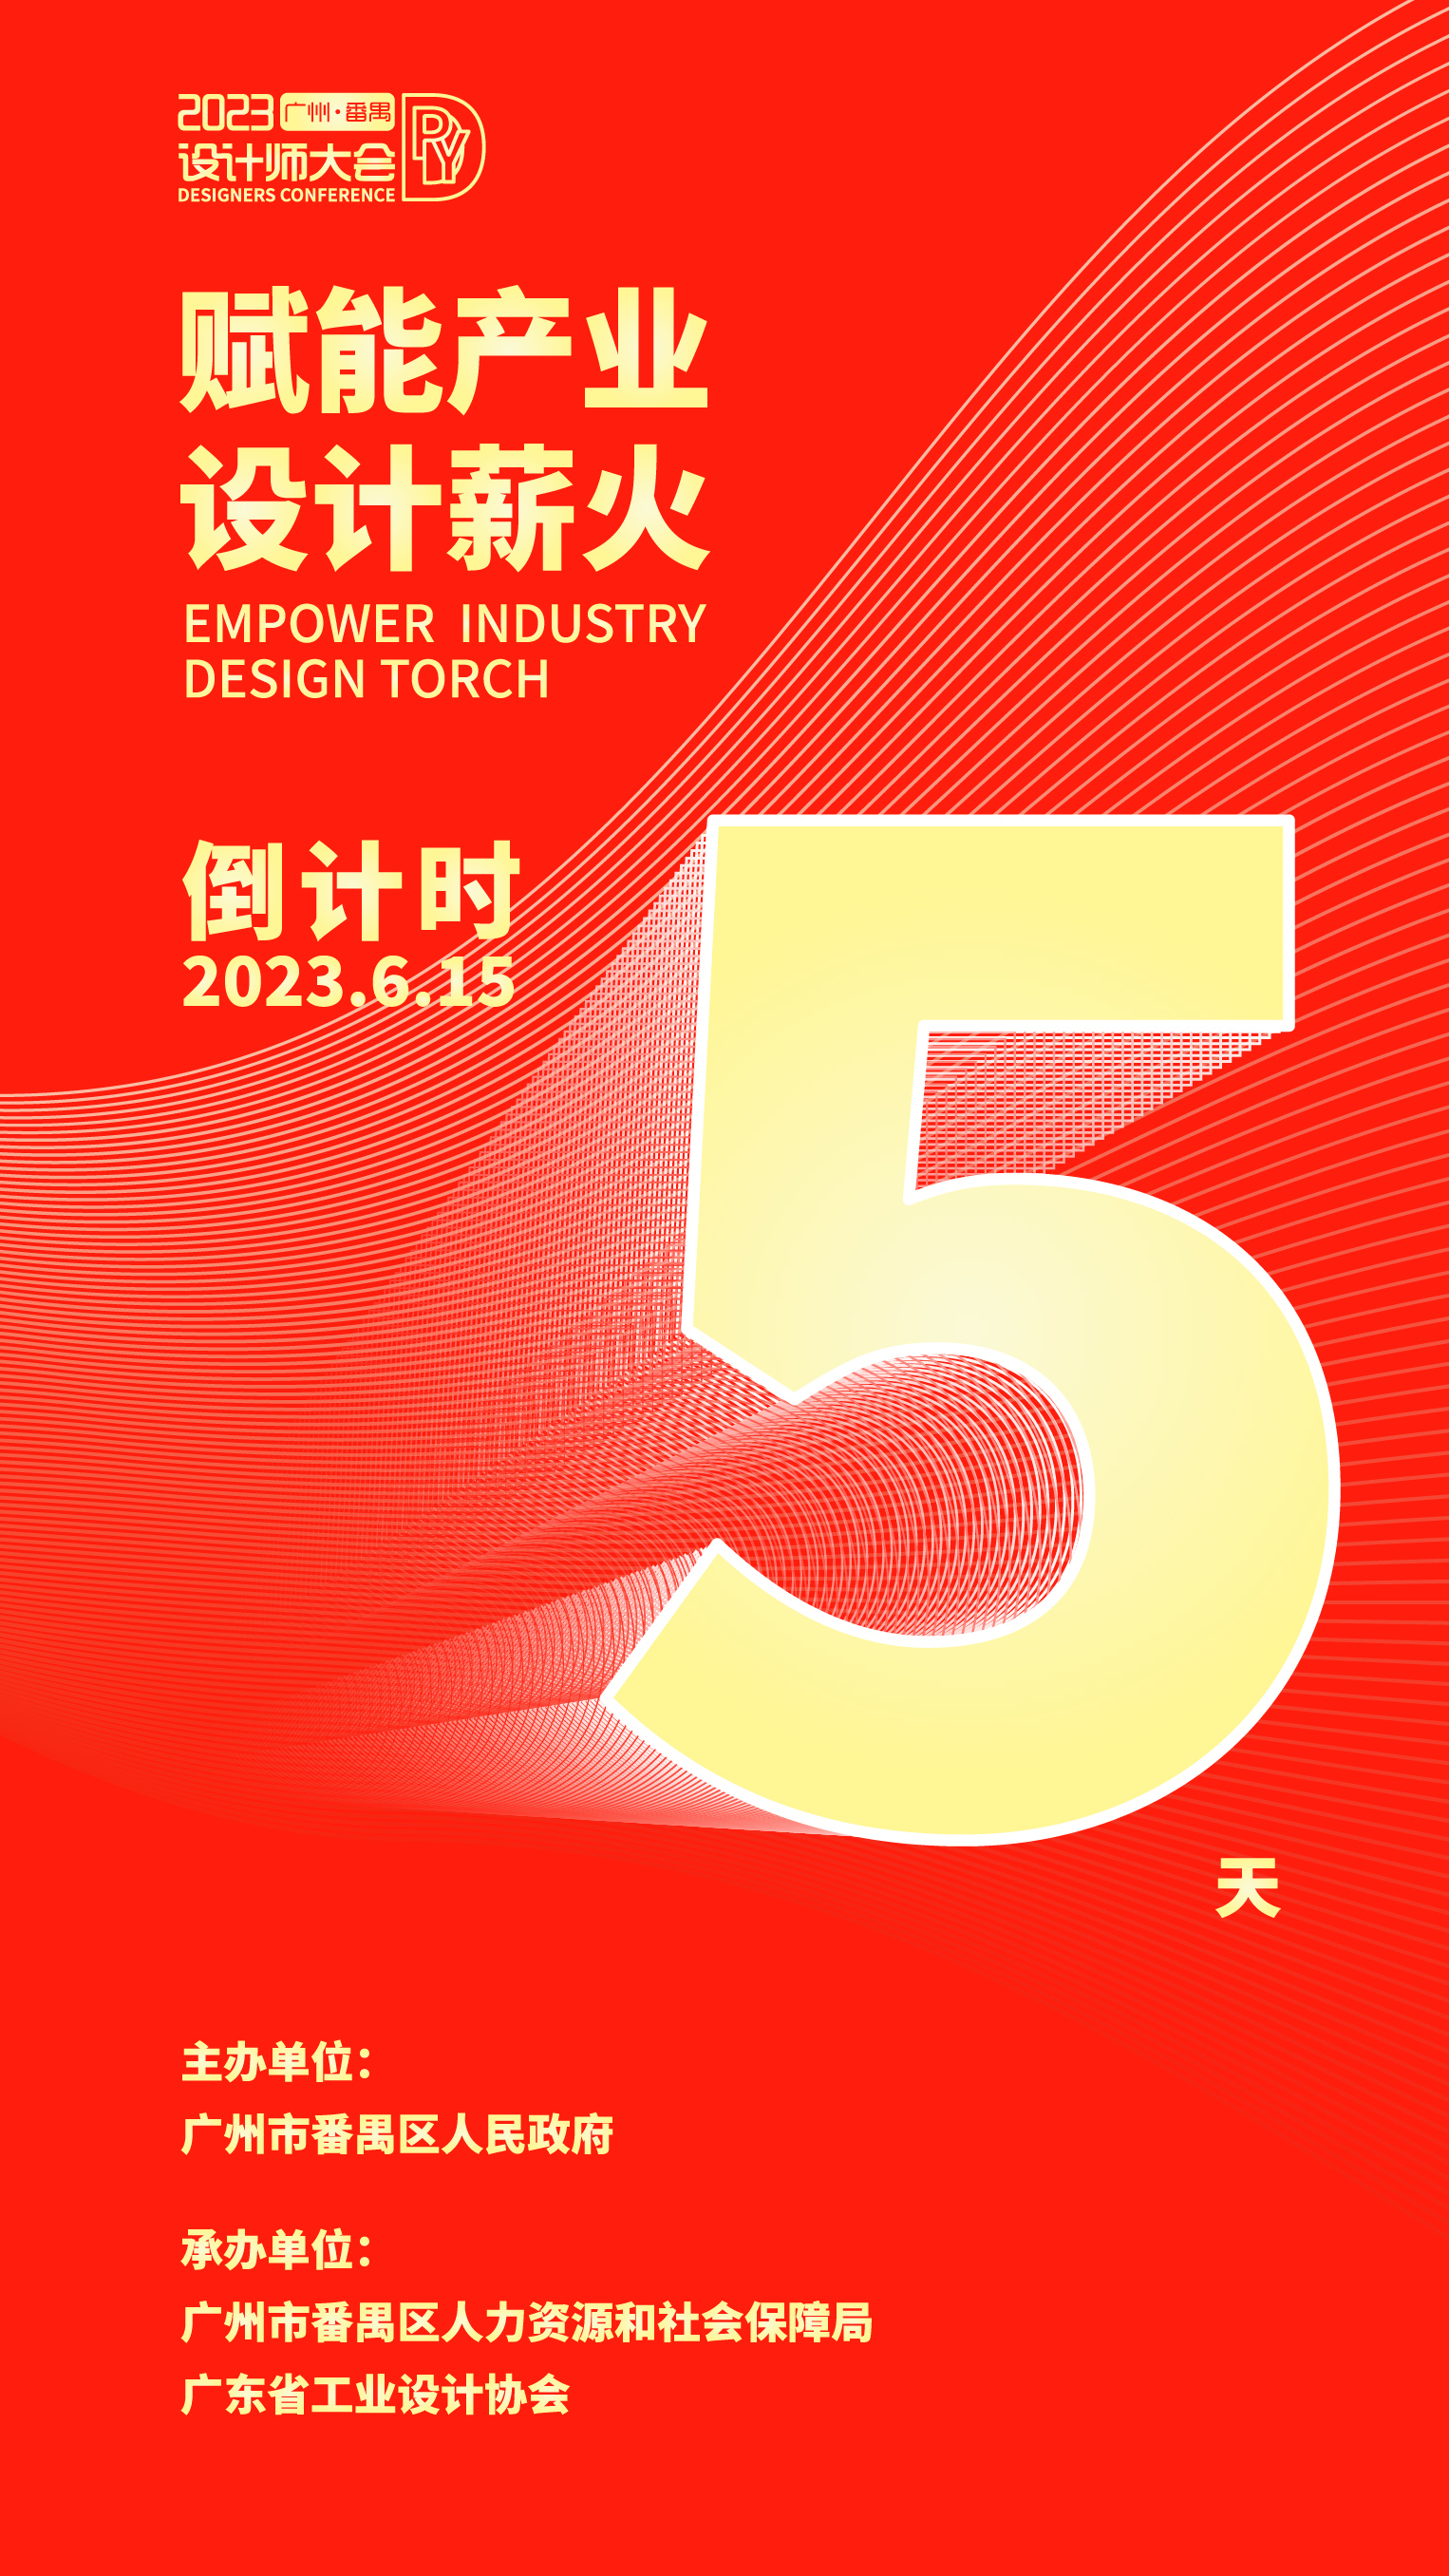 2023广州·番禺设计师大会将于6月15日在广州番禺拉开帷幕